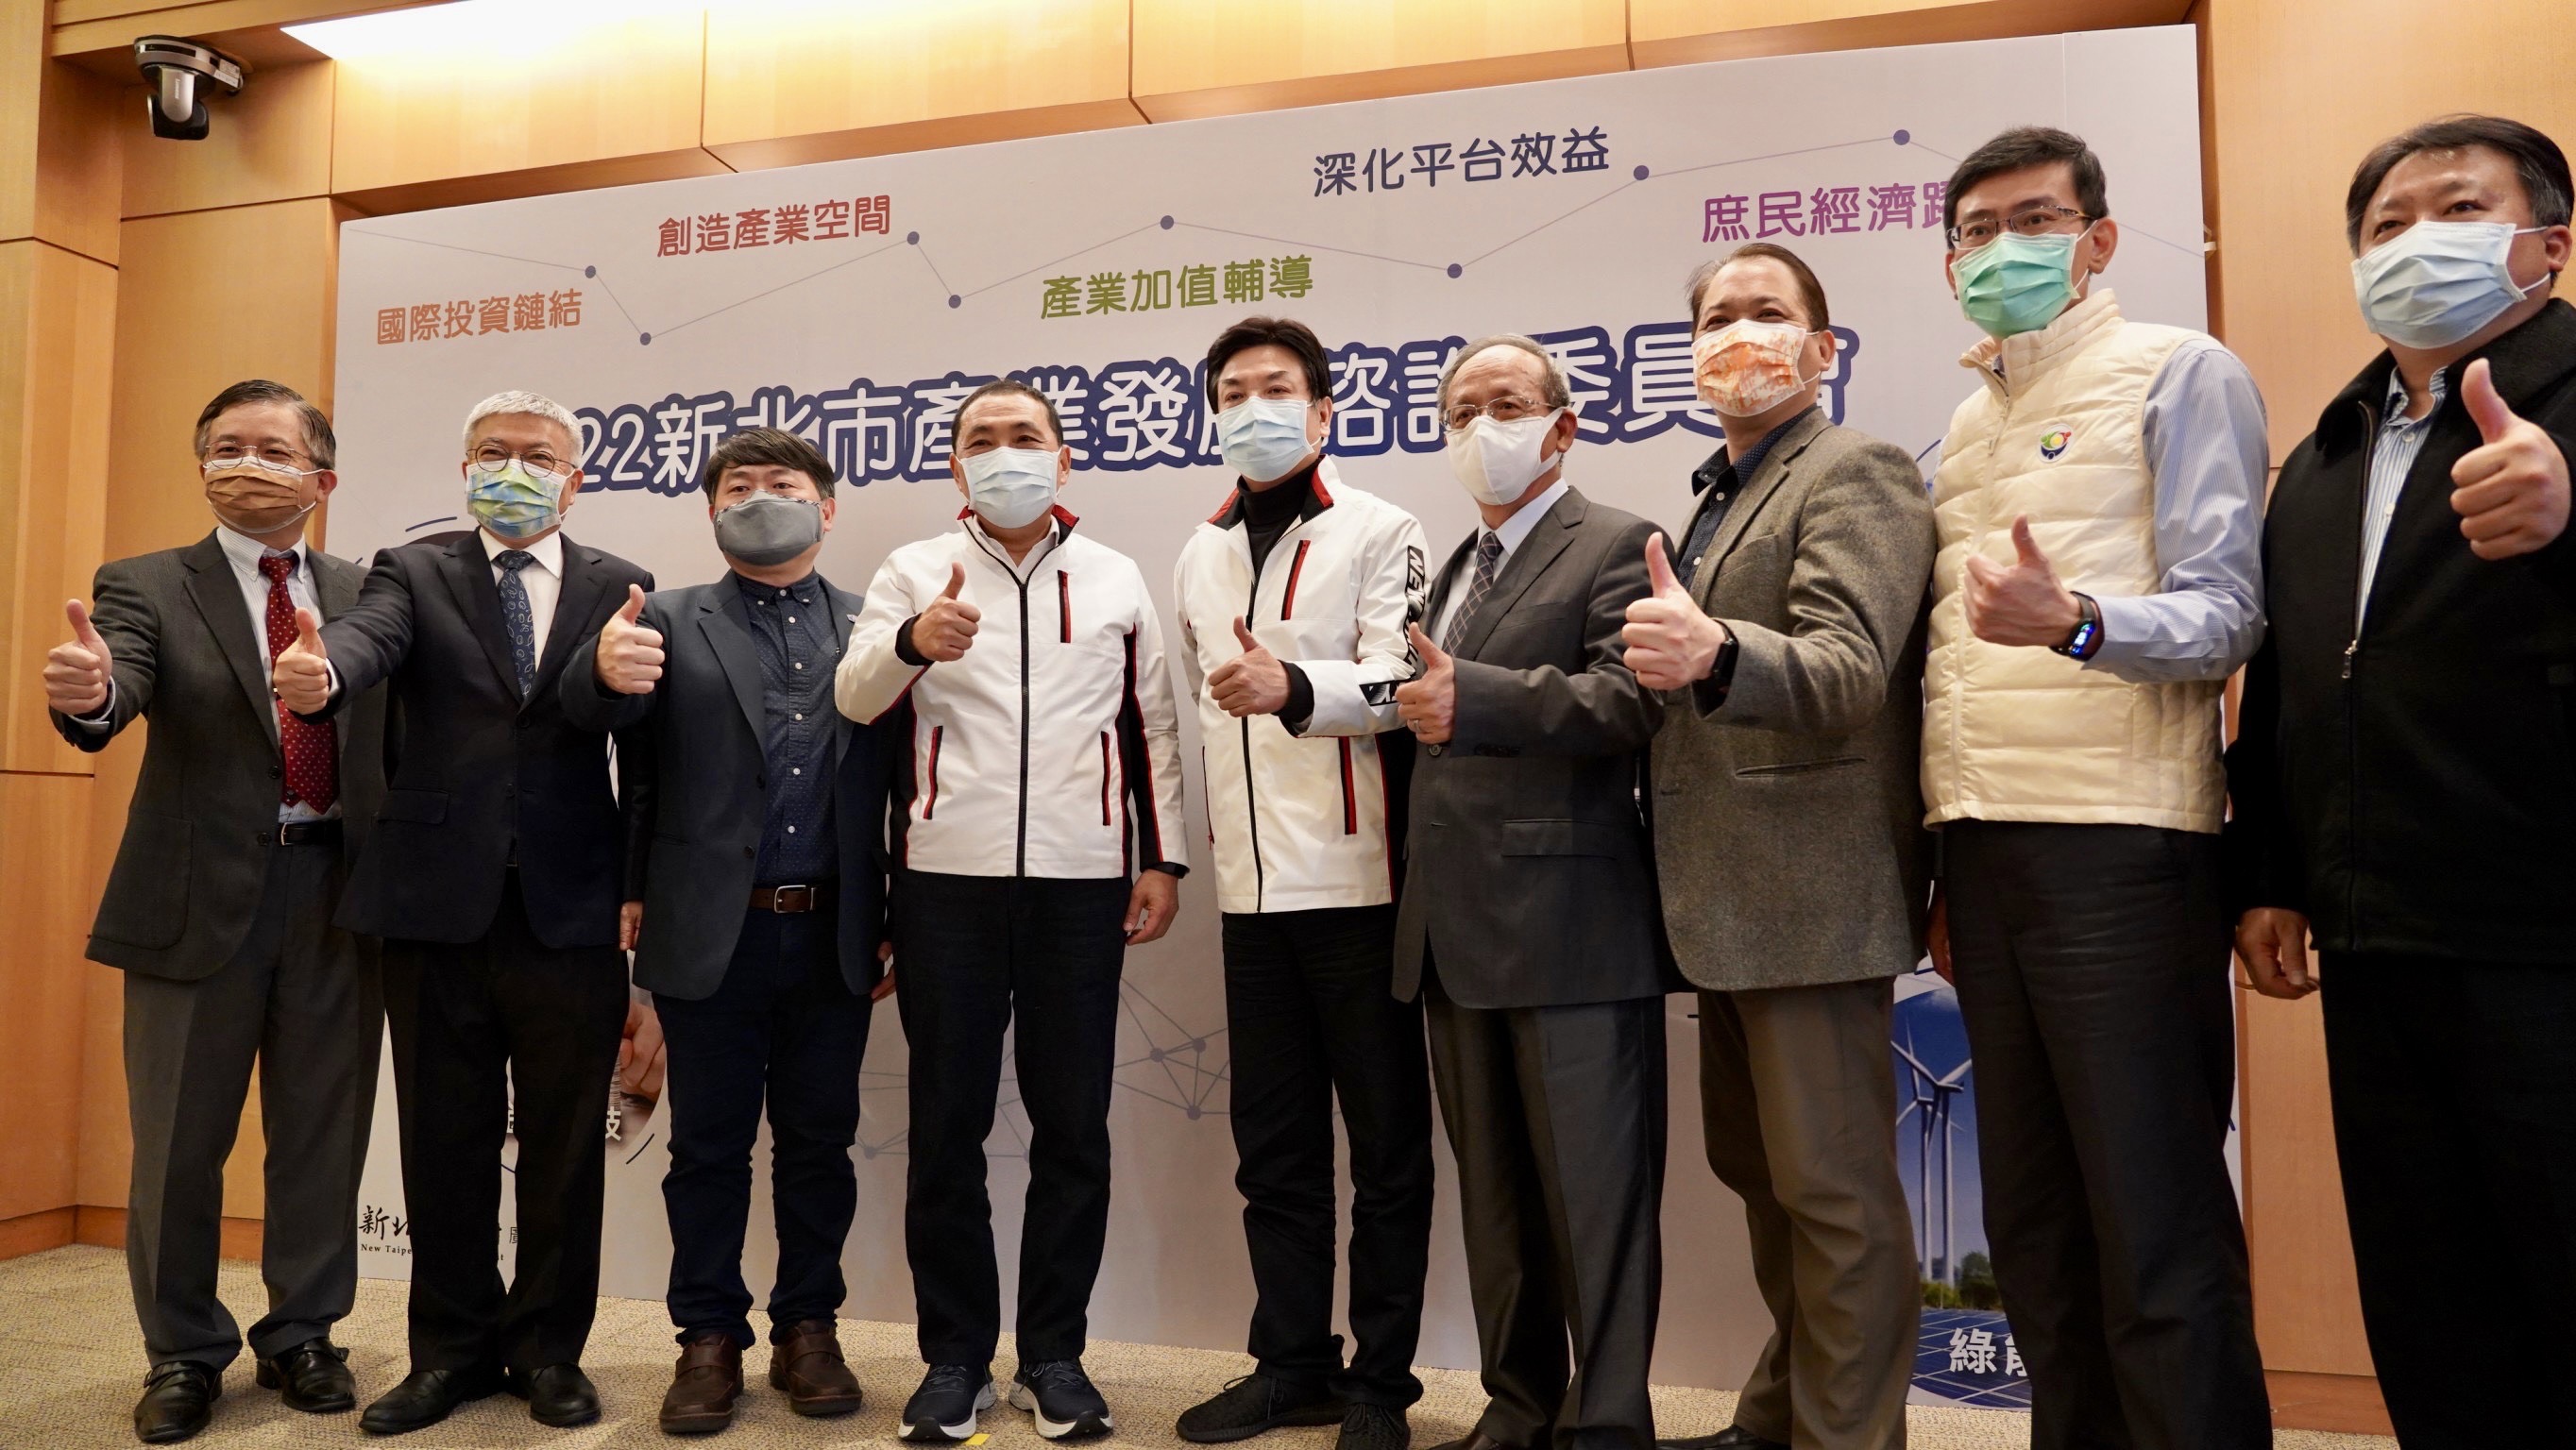 新北市長侯友宜(左四)及副市長劉和然(左五)與工商領袖代表一同合影